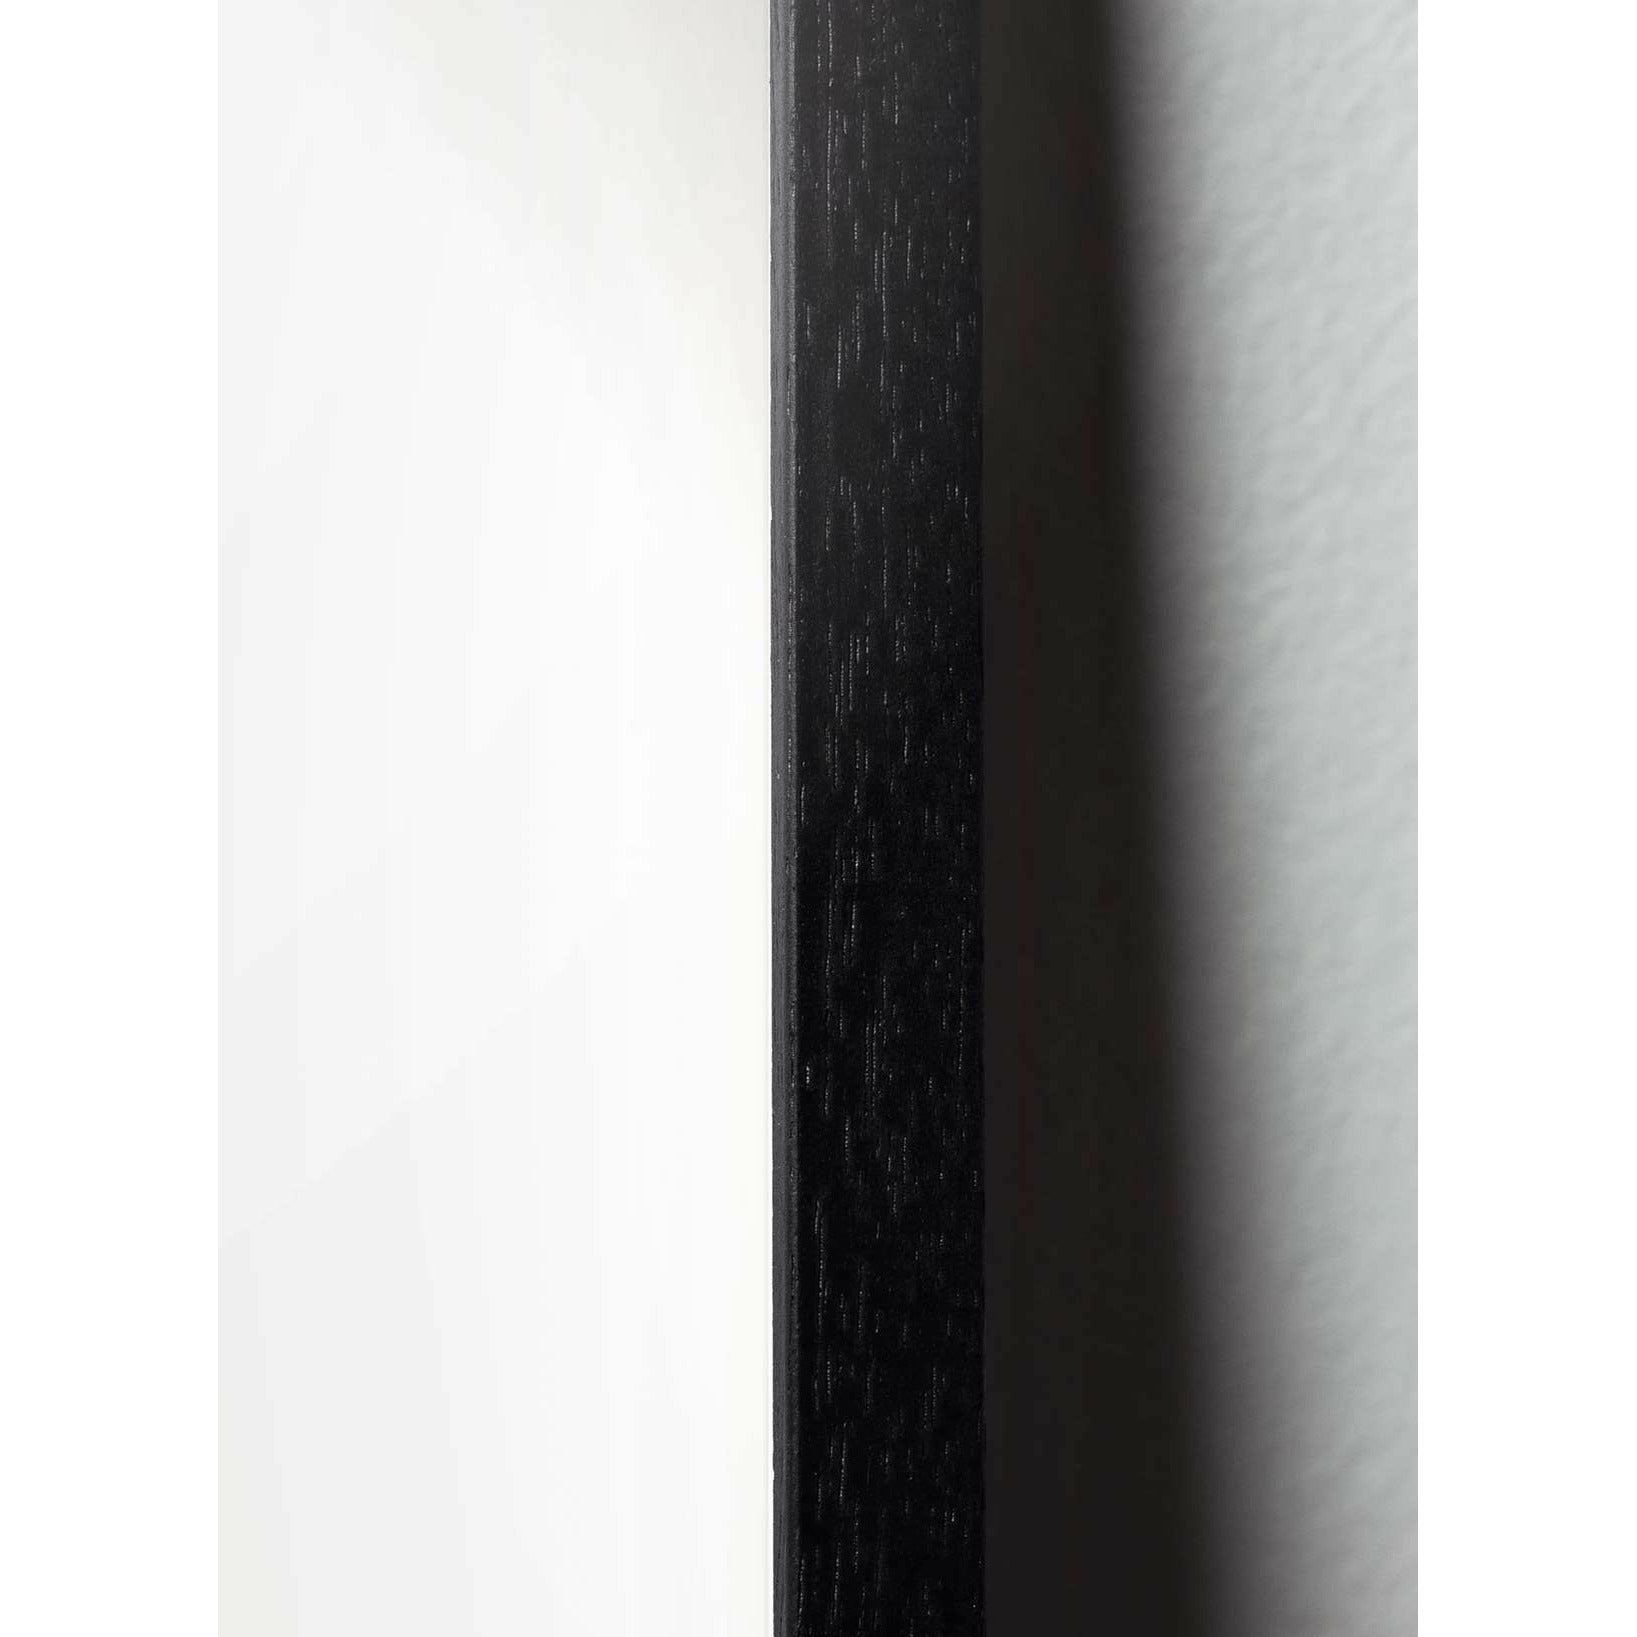 Pomysły Klasyczny plakat, rama w czarnym lakierowanym drewnie 30x40 cm, tło w kolorze piasku